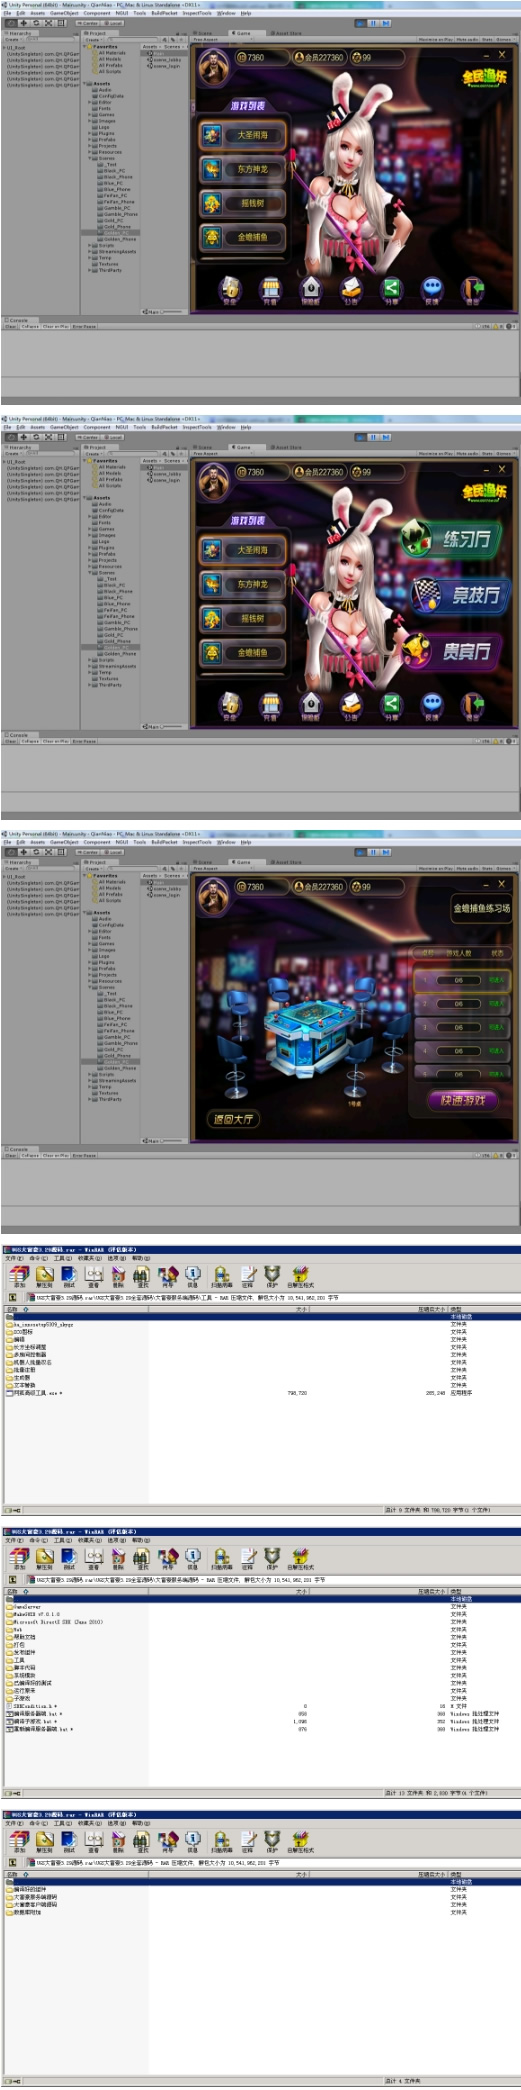 真正Unity3d大富豪娱乐游戏全套源码 运营版插图